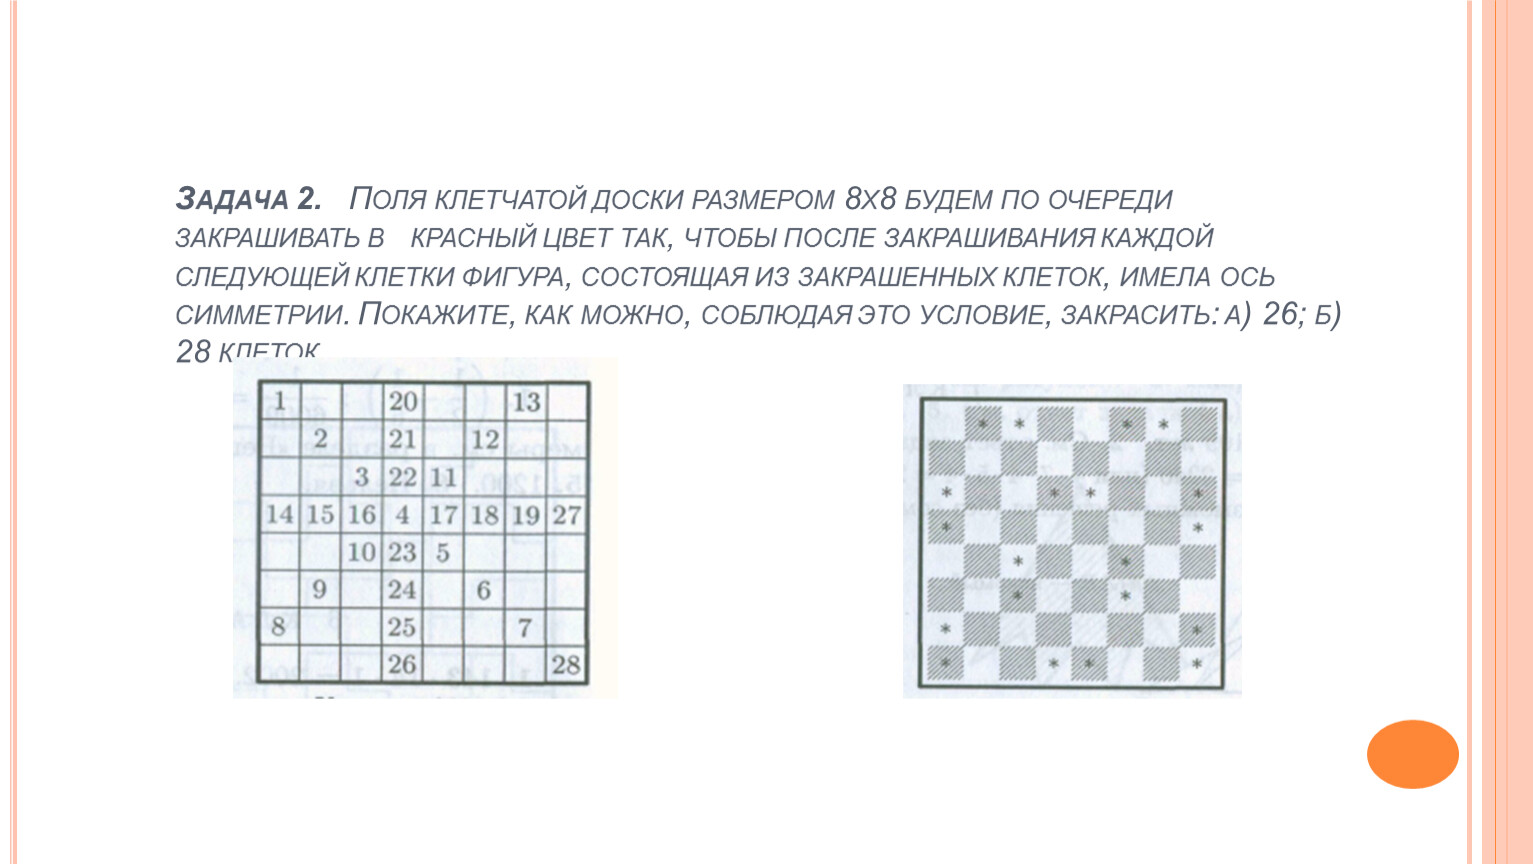 7 8 так называемых. Задачи на клетчатой доски. Поле шахматной доски схема. Задача на клетчатом поле. Задачи на закрашивание клеток в квадрате.